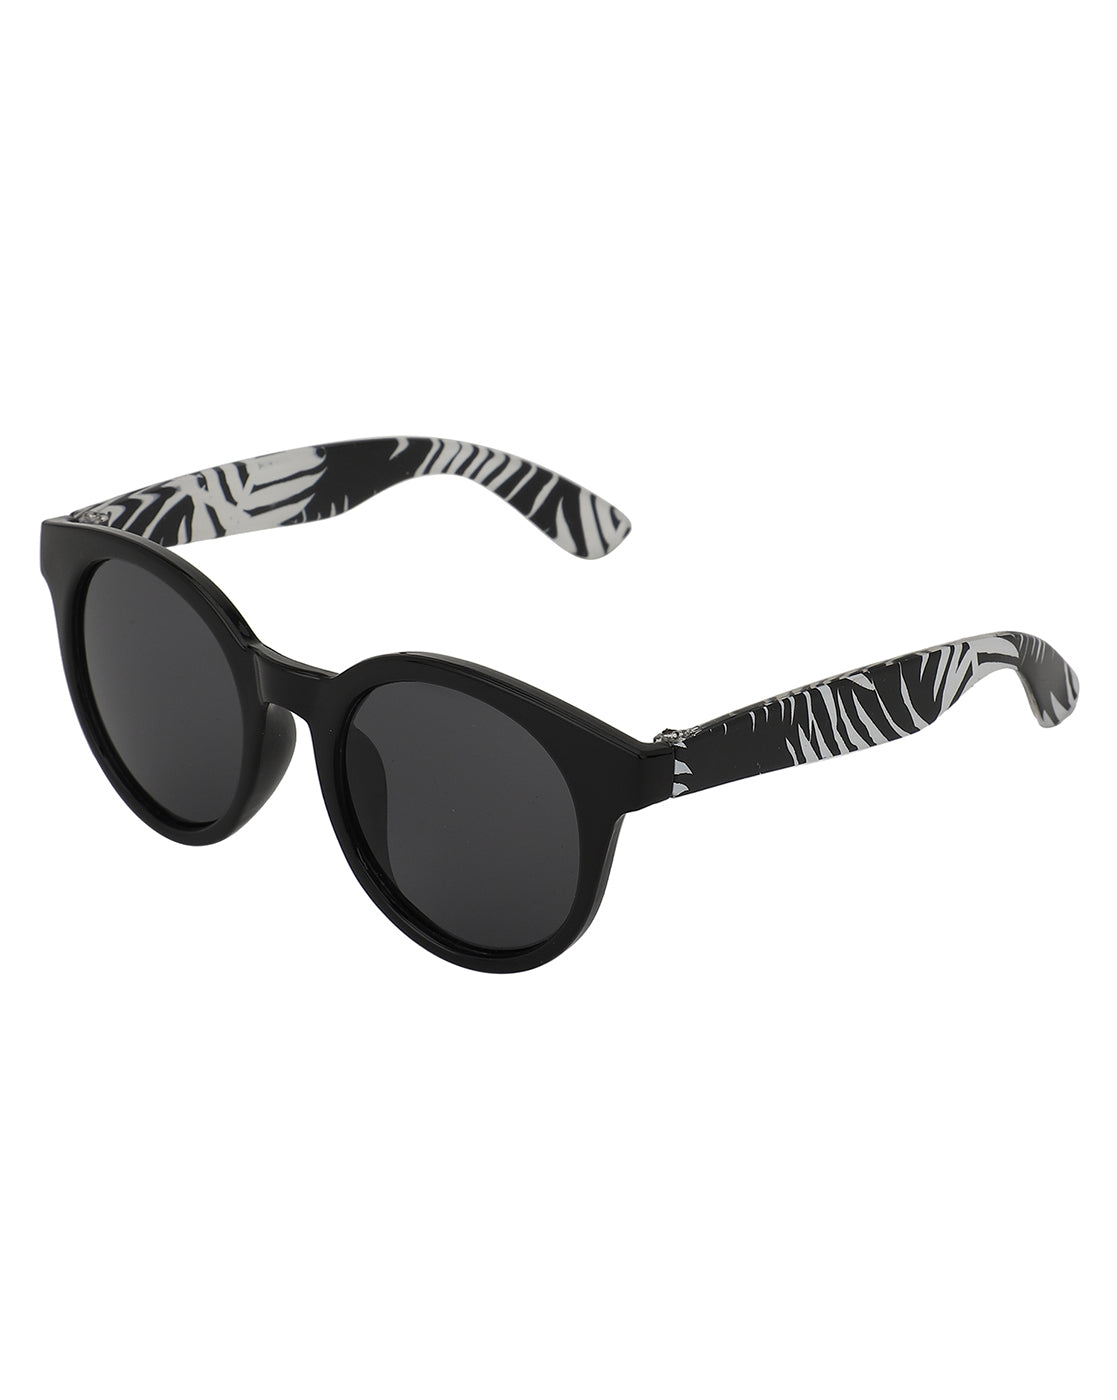 Carlton London Black Lens &amp; Black Cateye Sunglasses For Girl